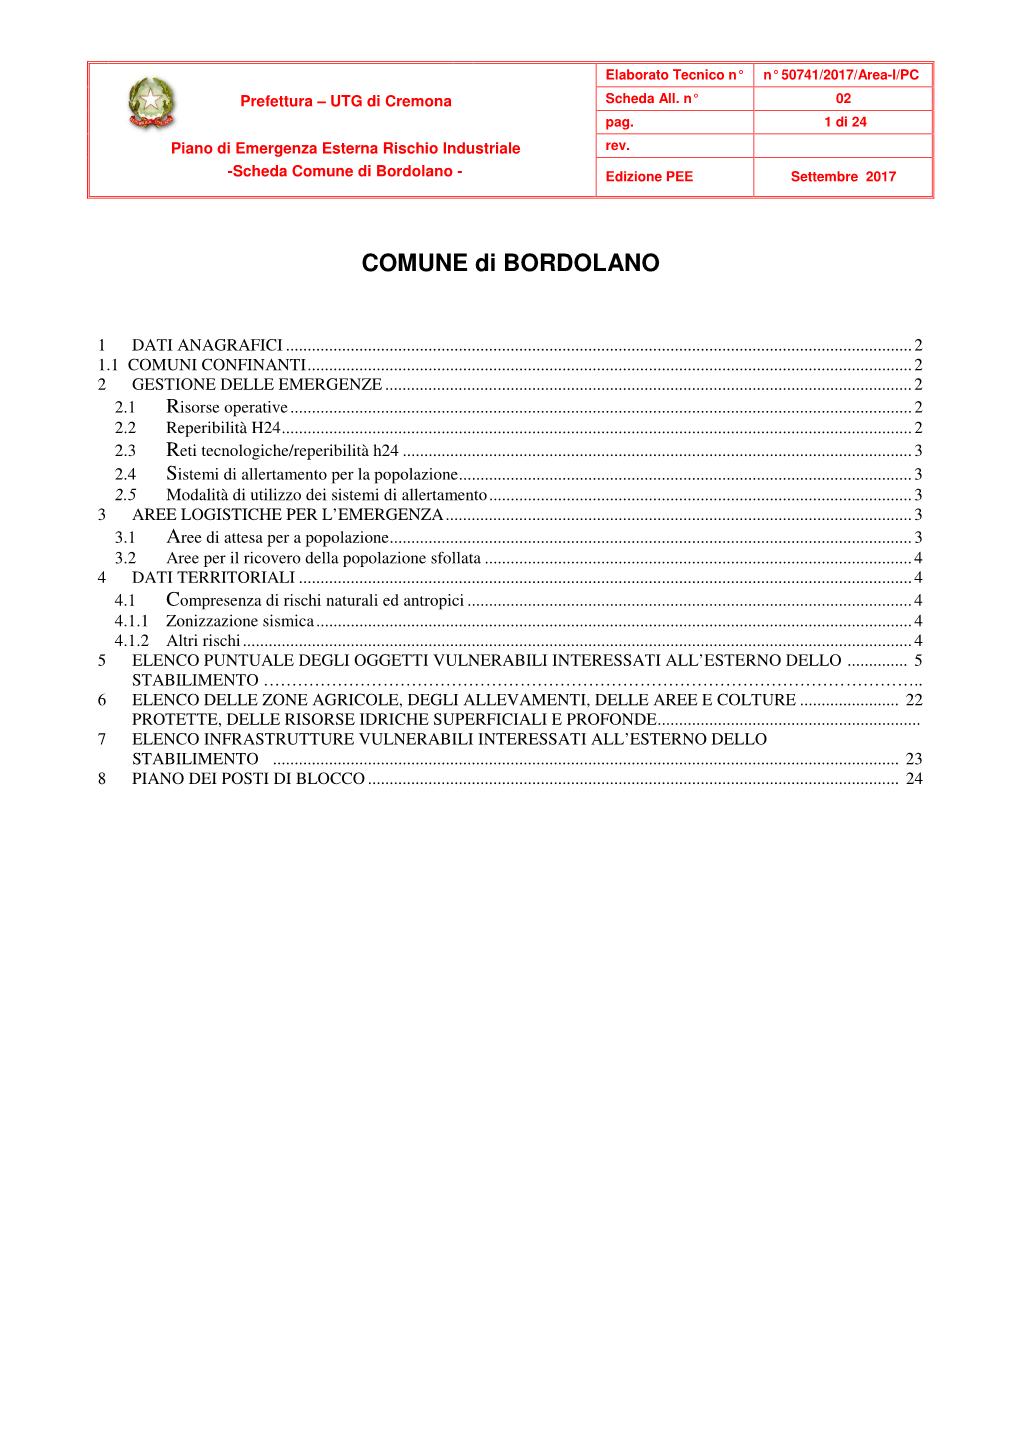 Scheda Comune Di Bordolano - Edizione PEE Settembre 2017